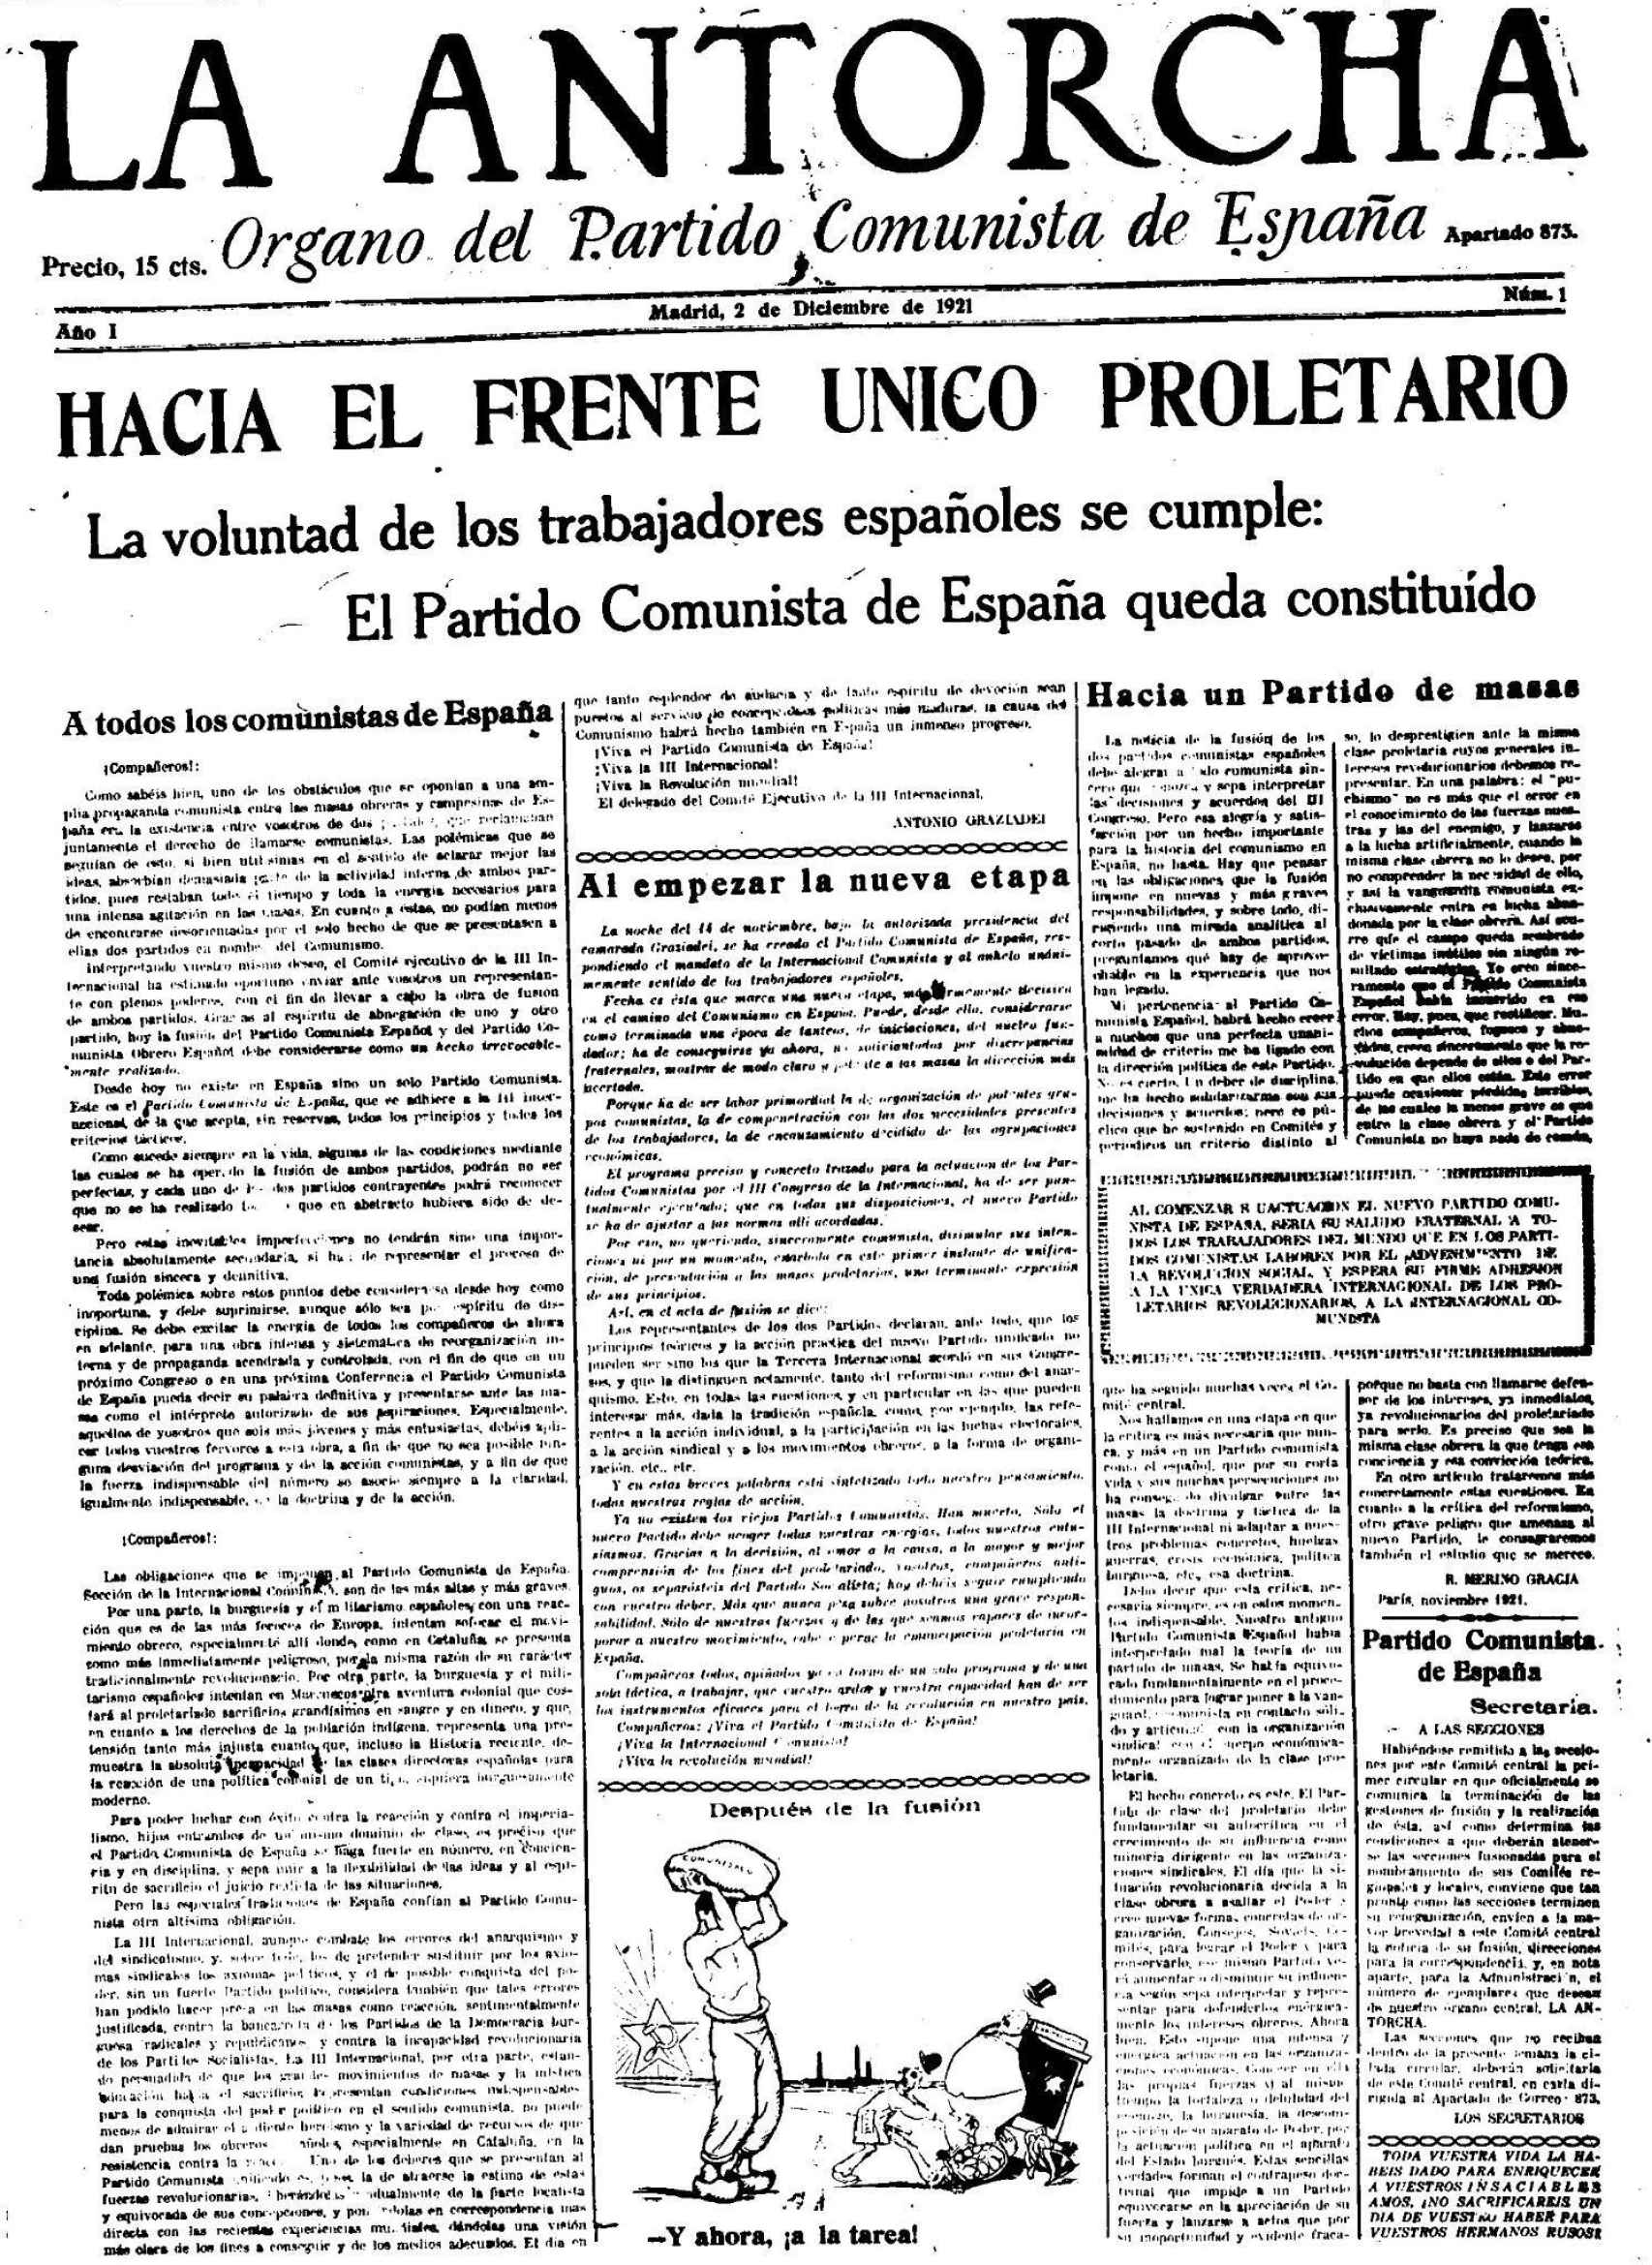 Portada de 'La Antorcha', primer órgano oficial del PCE, del 2 de diciembre de 1921.